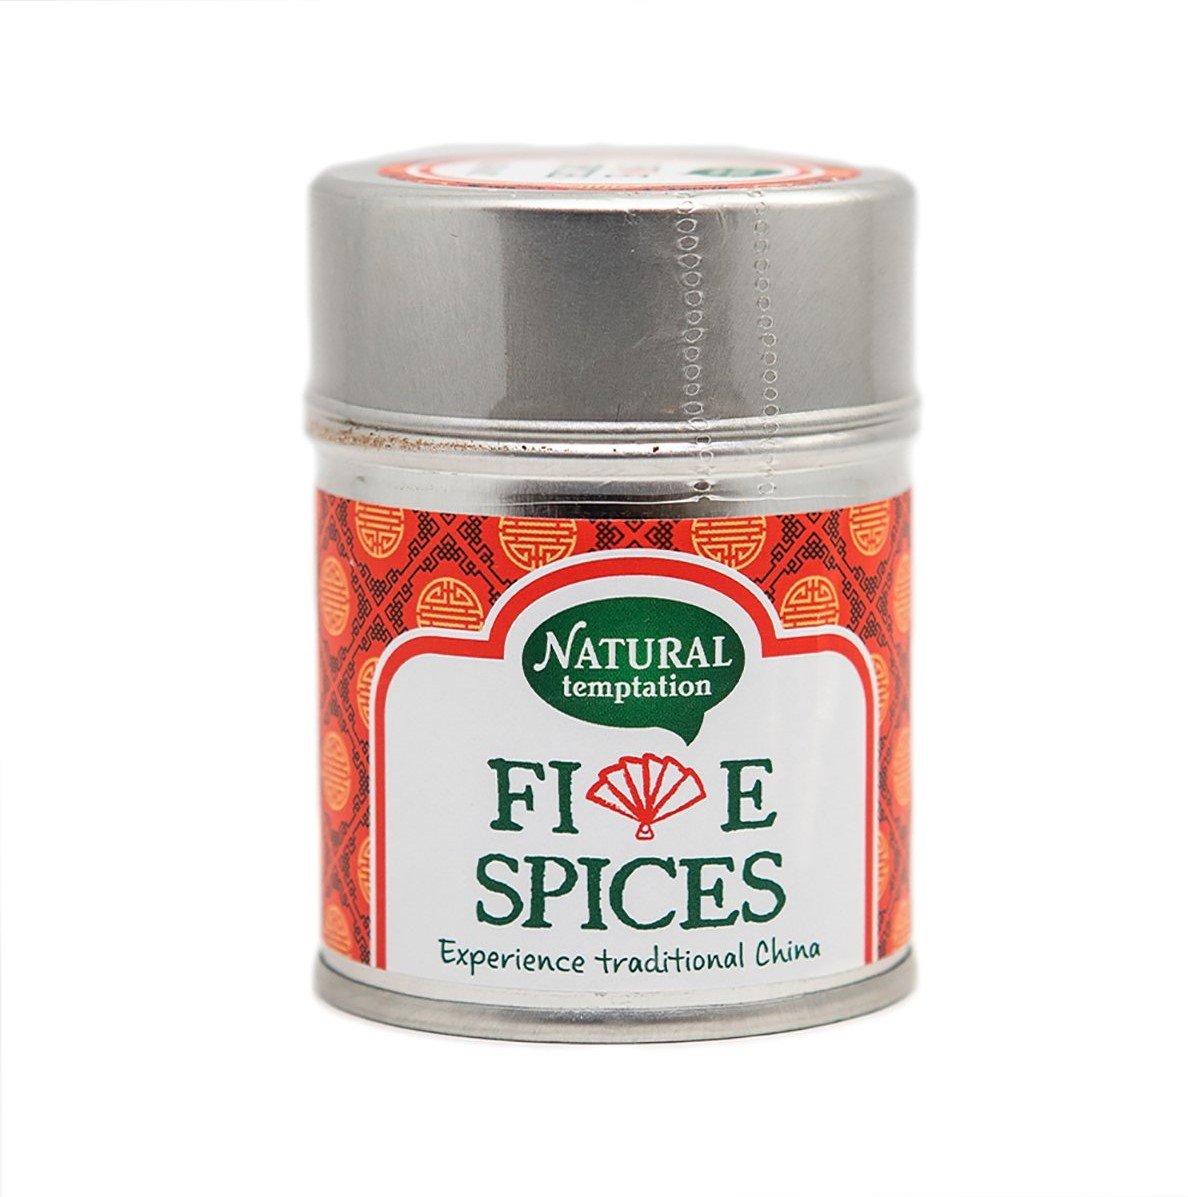 Nat. Temptation Five spices kruidenmix 50g